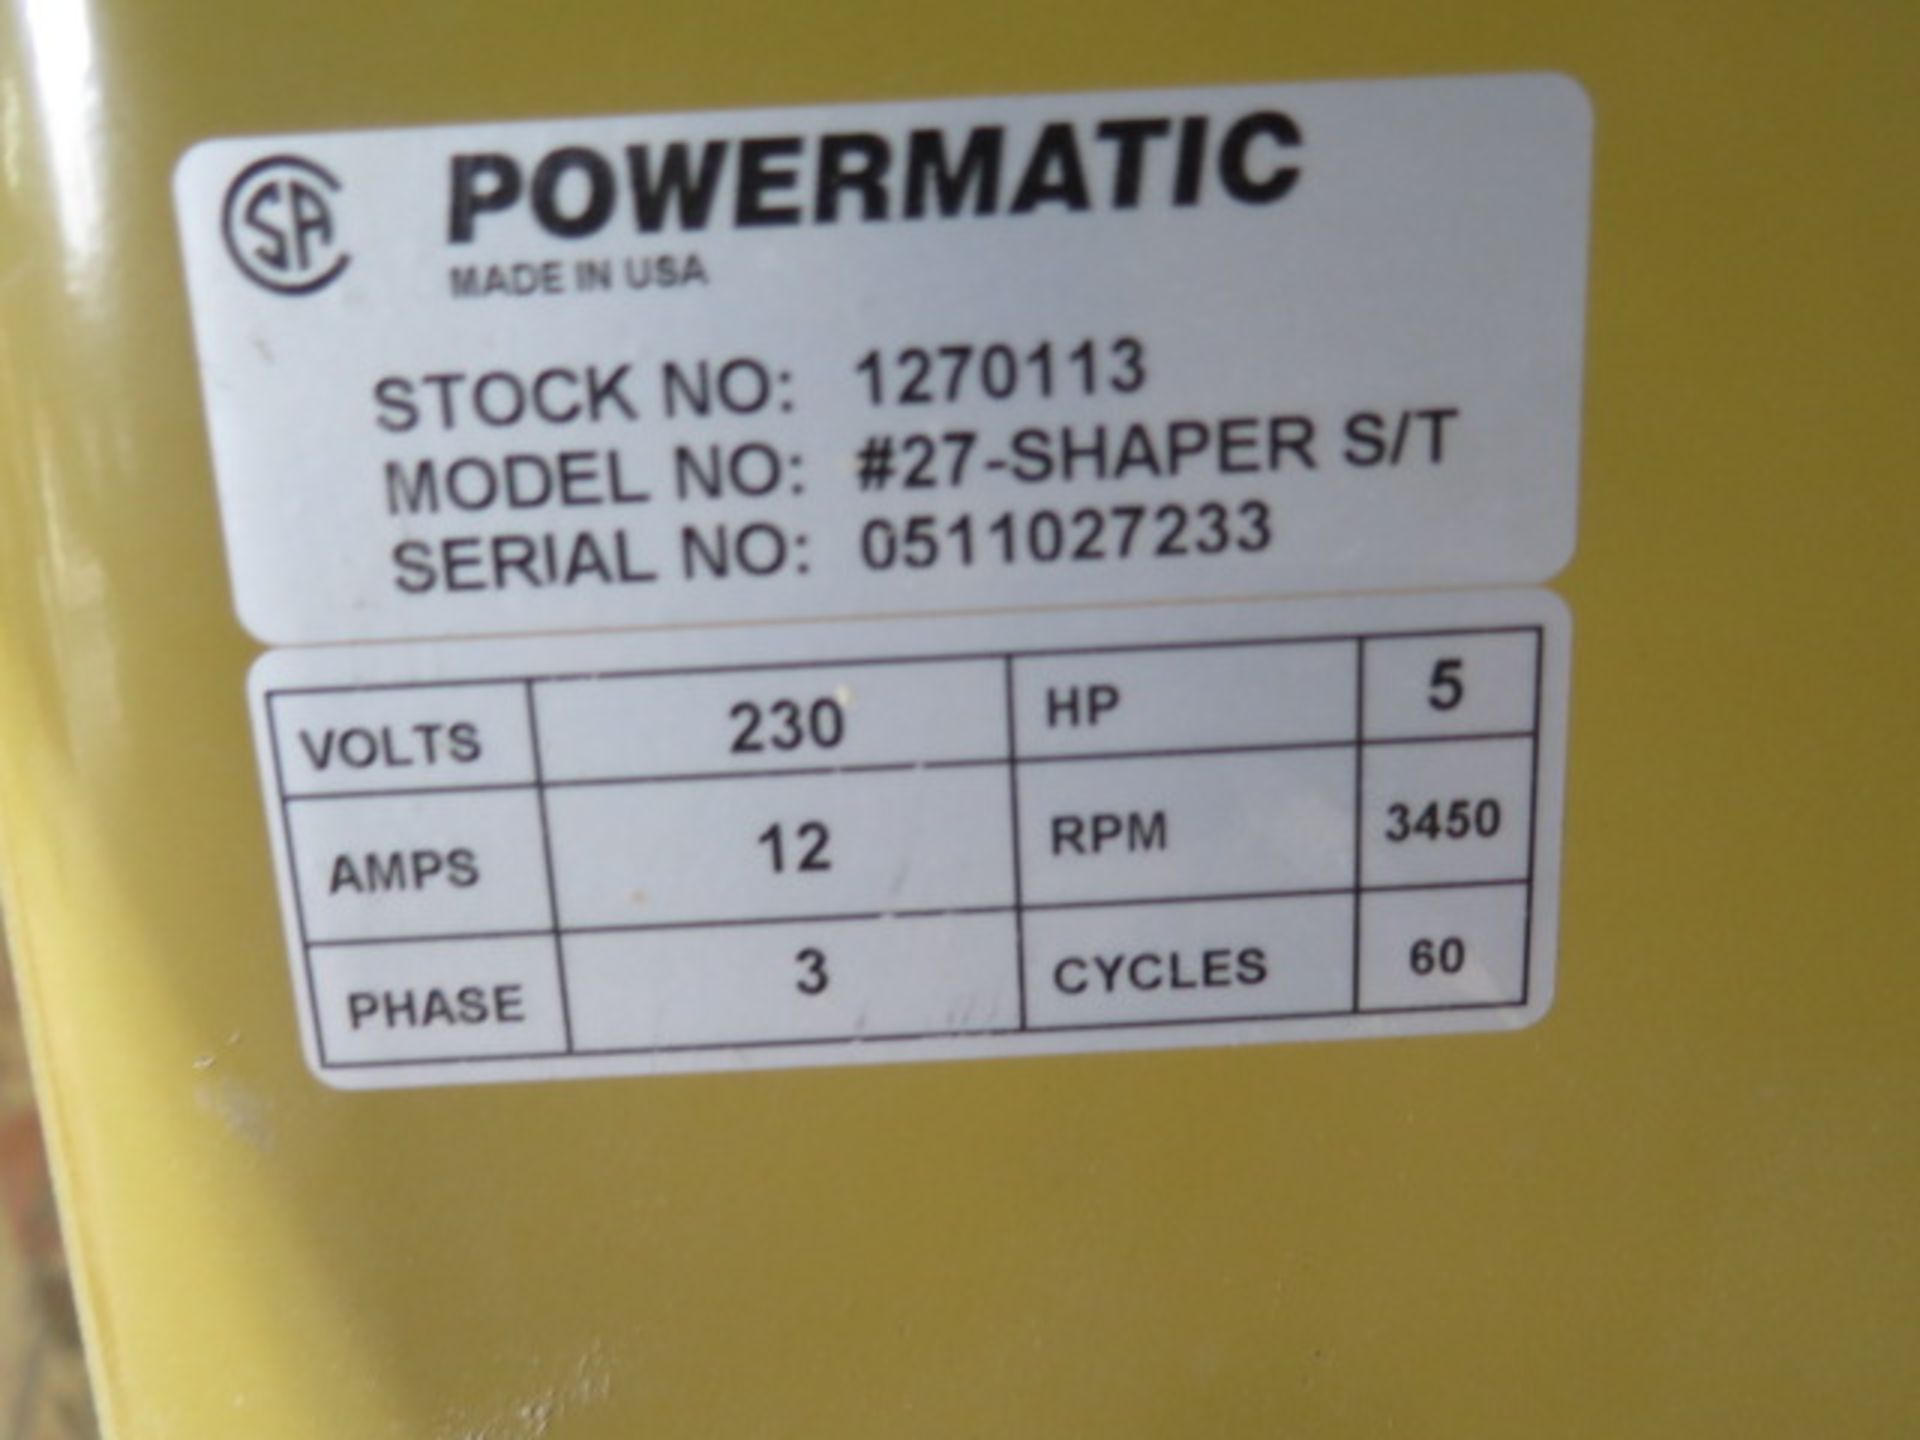 Powermatic mdl. #27-SHAPER S/T Wood Shaper s/n 0511 027233 (SOLD AS-IS - NO WARRANTY) - Image 9 of 9